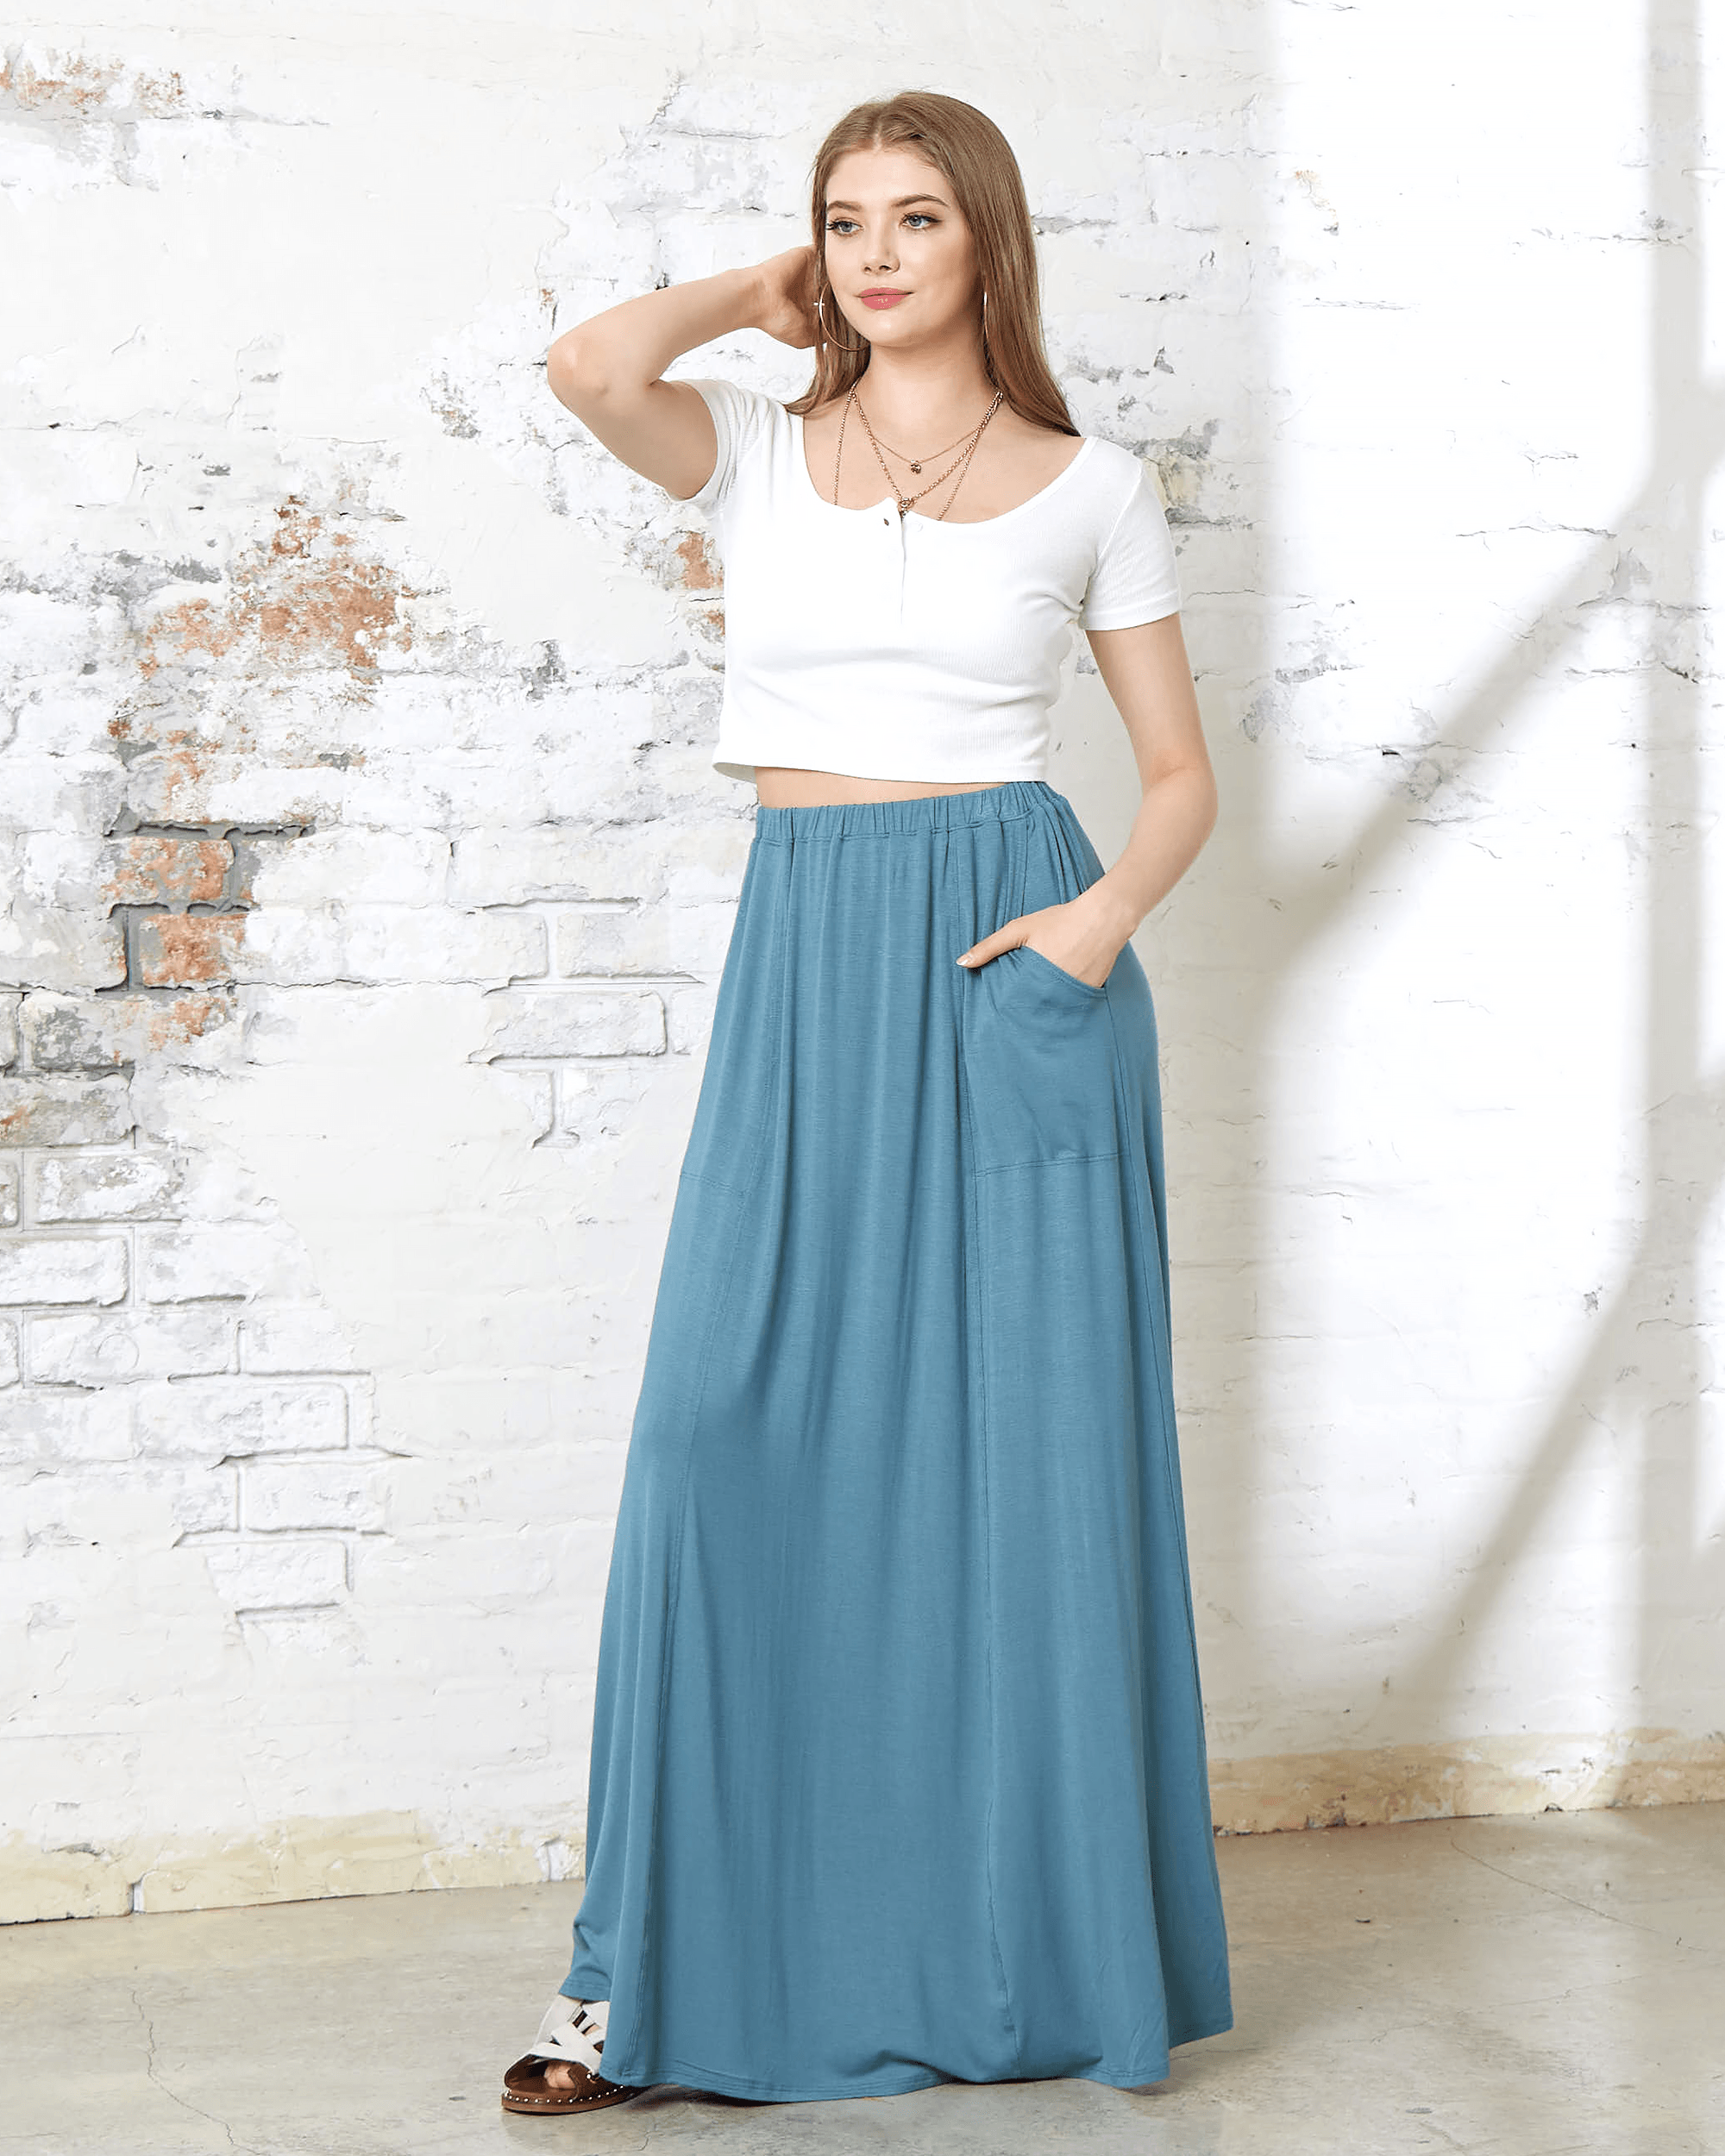 Vintage Blue Maxi Skirt - Soft & Lightweight